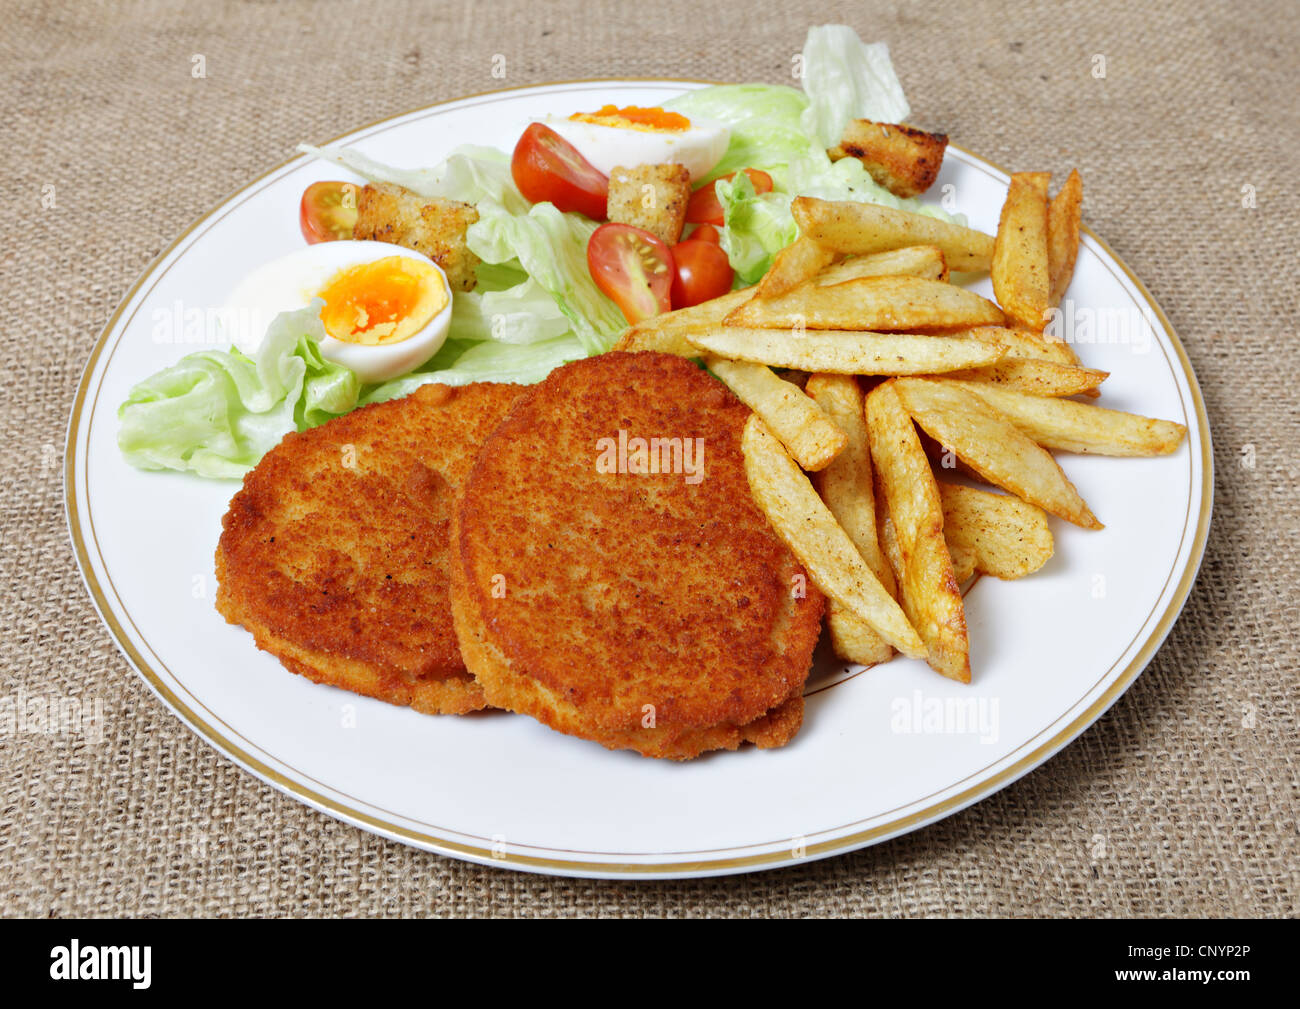 Eine Mahlzeit mit Chicken Burger mit Tomate, Ei und Salat Salat und französische gebratene Kartoffelchips Stockfoto